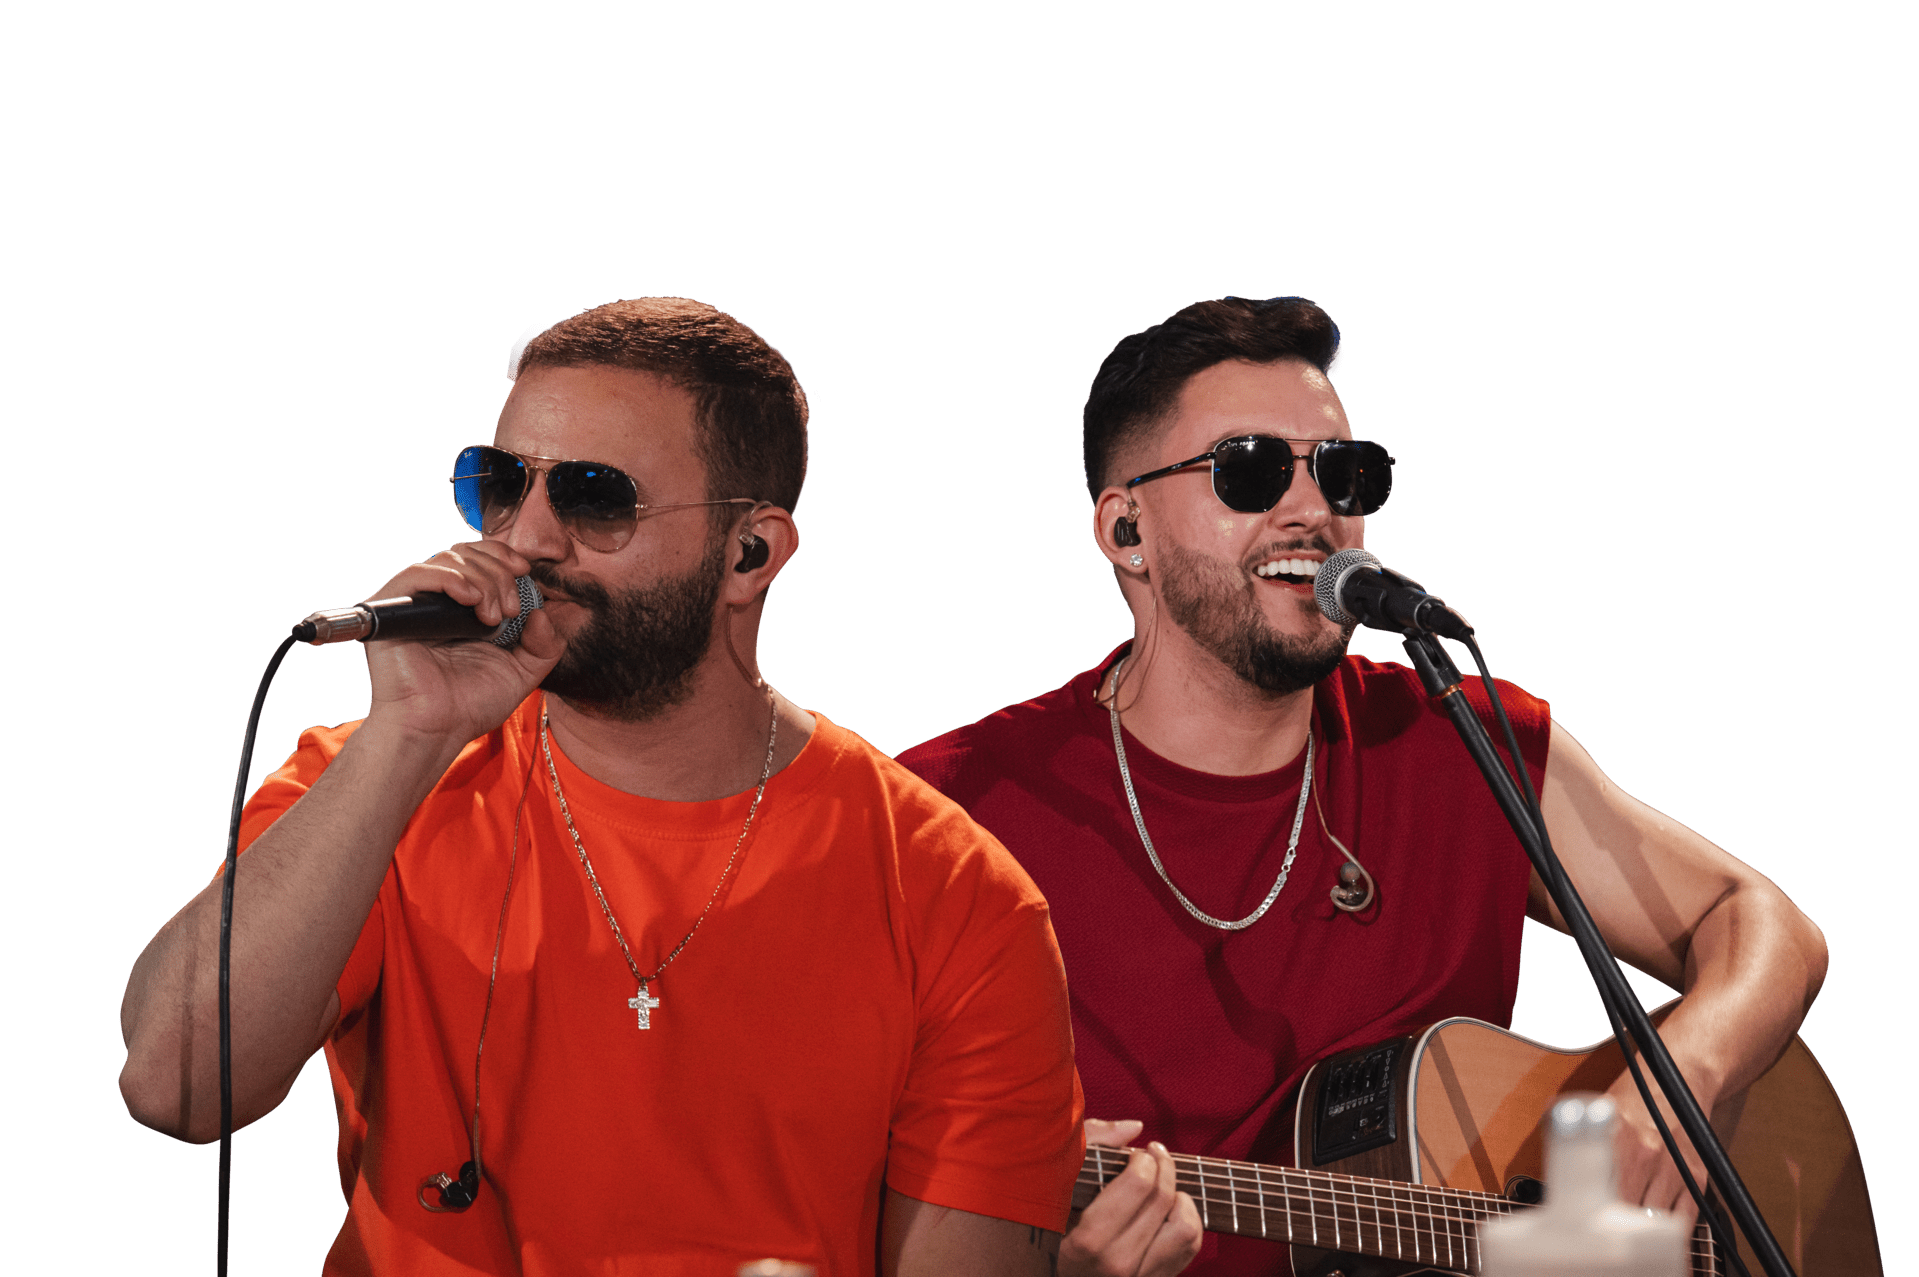 Juan Marcus & Vinícius Revelam Novo Projeto Musical “Festinha VIP Vol. 02”